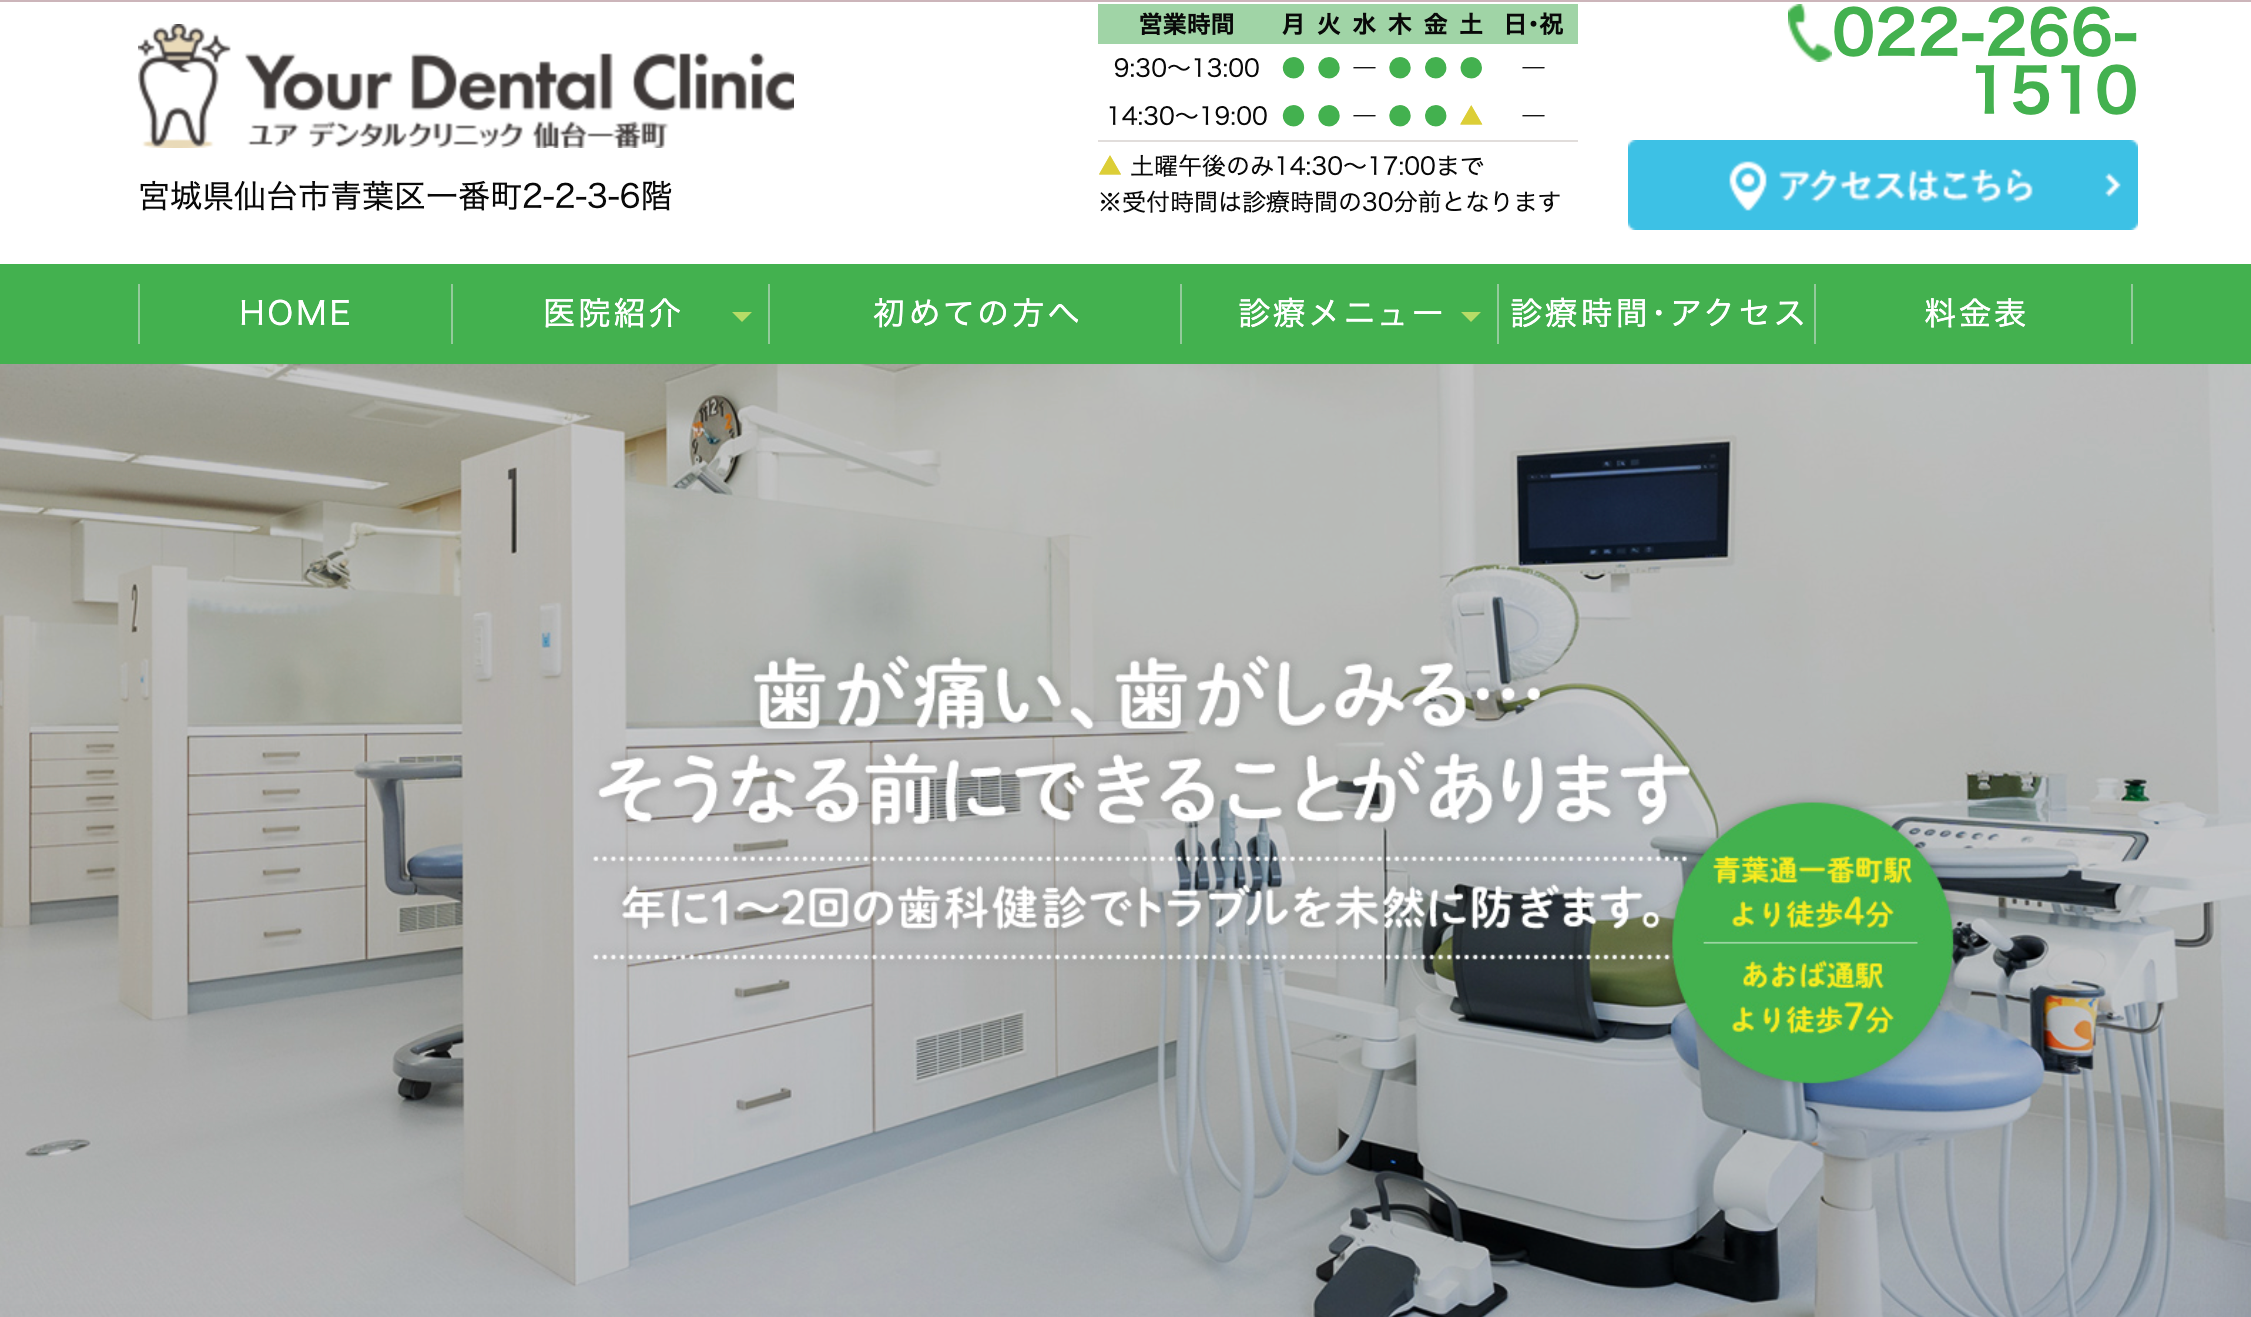 仙台市の審美治療におすすめの歯科クリニック5選 Your Dental Clinic 仙台一番町